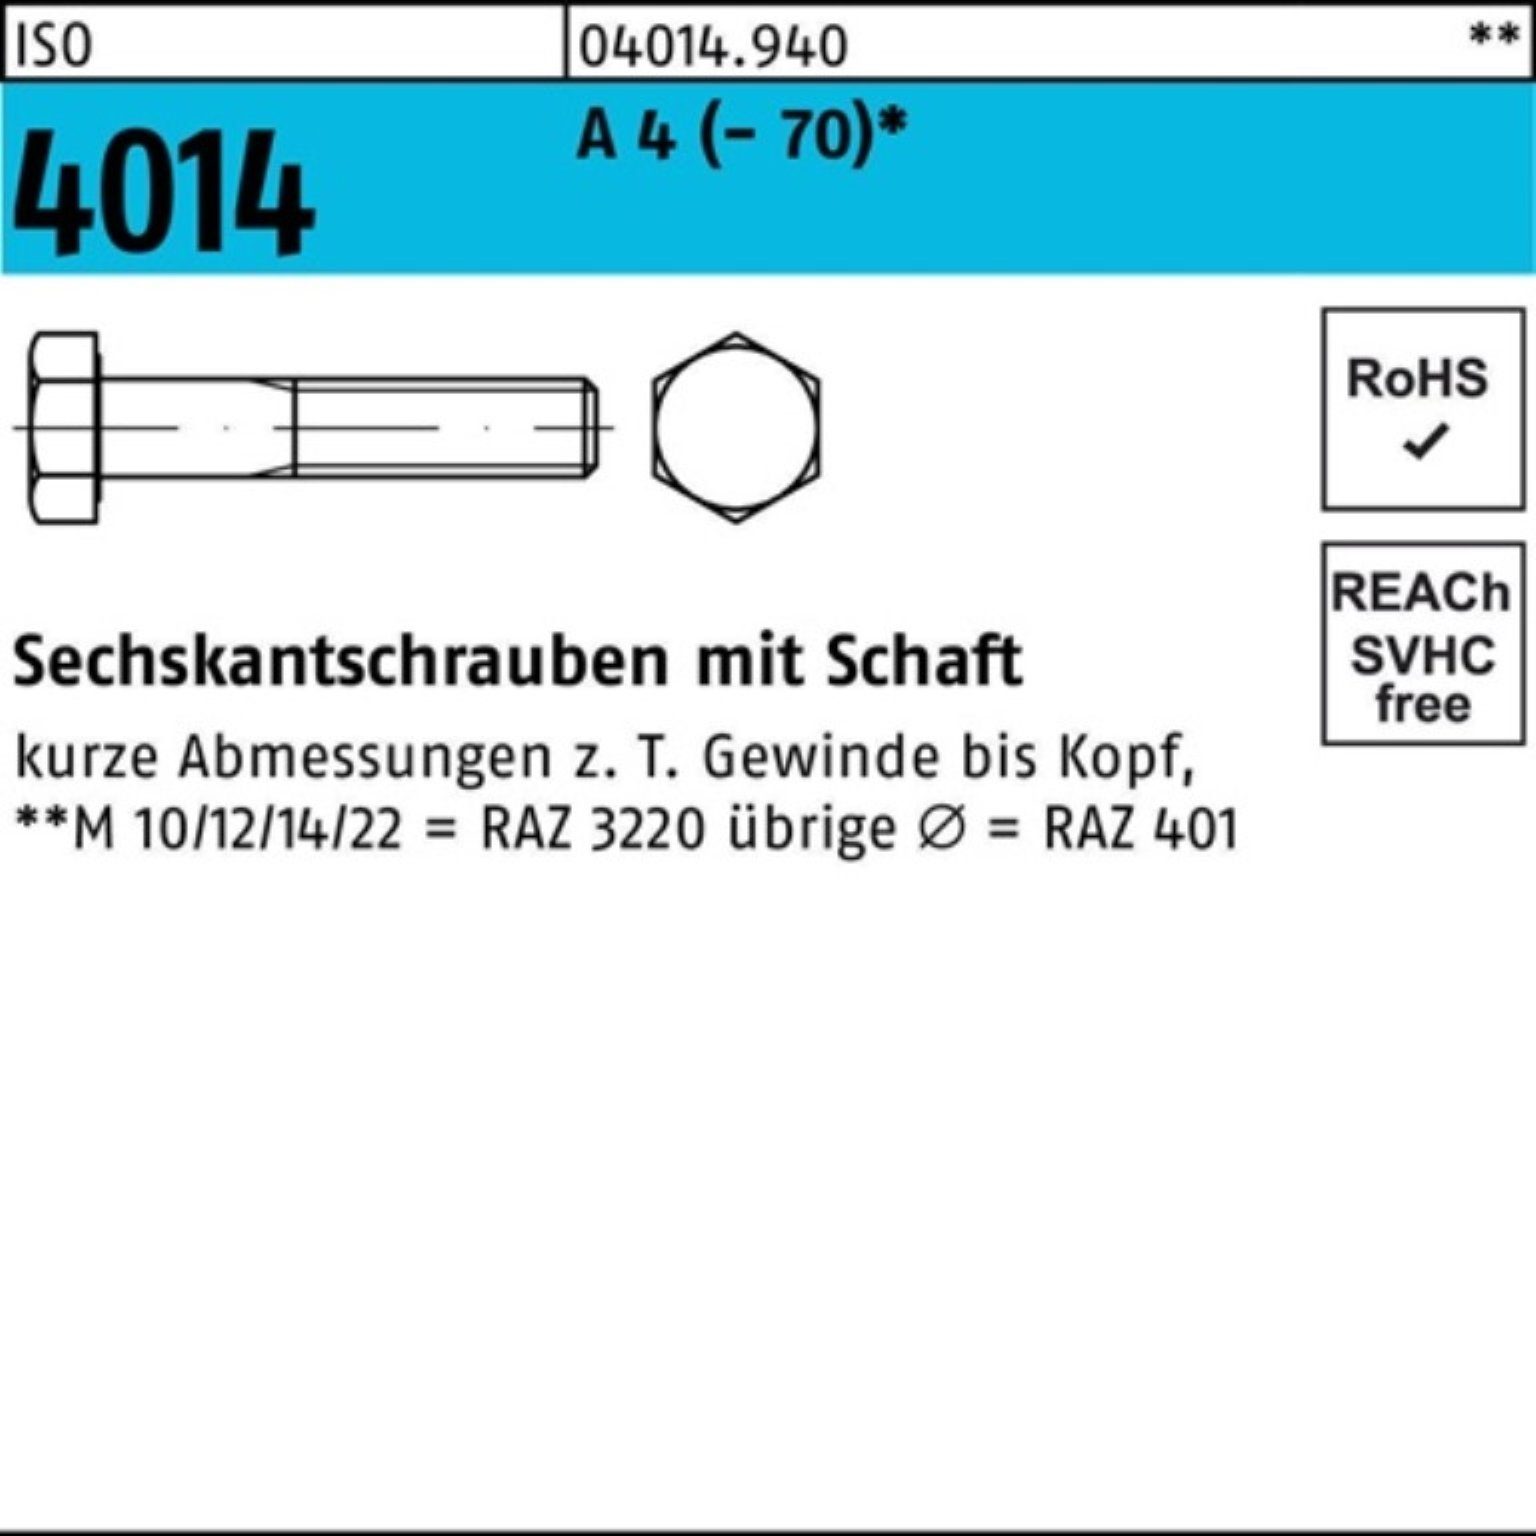 Pack Sechskantschraube 100er Bufab 4014 St 1 A M16x 4 240 Sechskantschraube ISO Schaft (70)